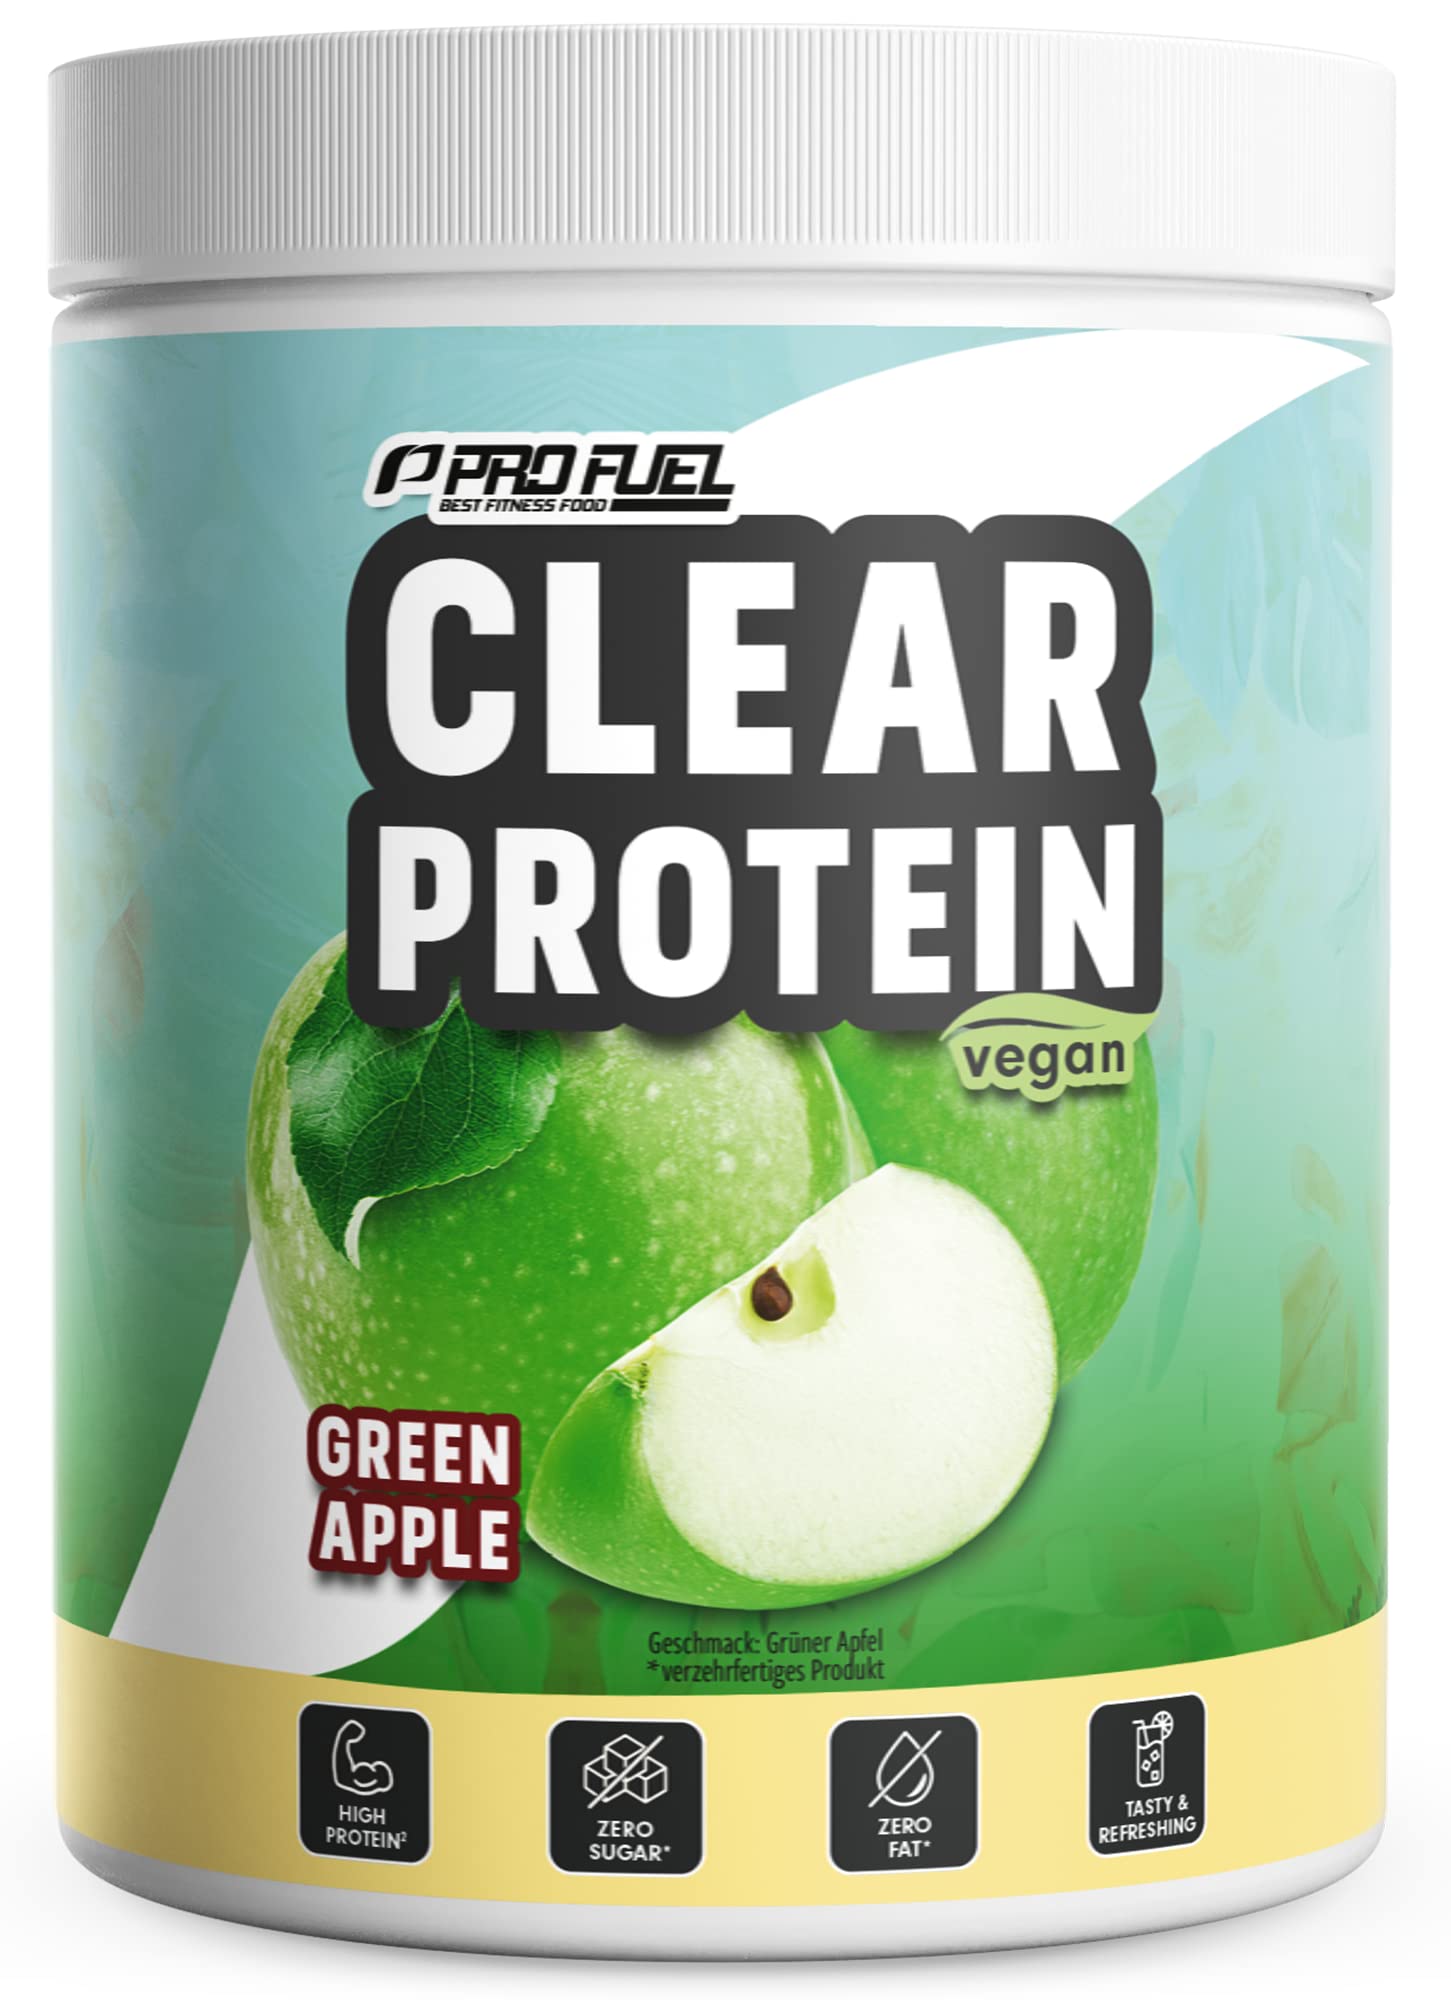 Clear Protein Vegan 360g GREEN APPLE - unglaublich leckerer & erfrischender Protein-Drink - Clear Whey Protein/Iso Clear Alternative mit hochwertigem Erbsenproteinhydrolysat - 56% Protein